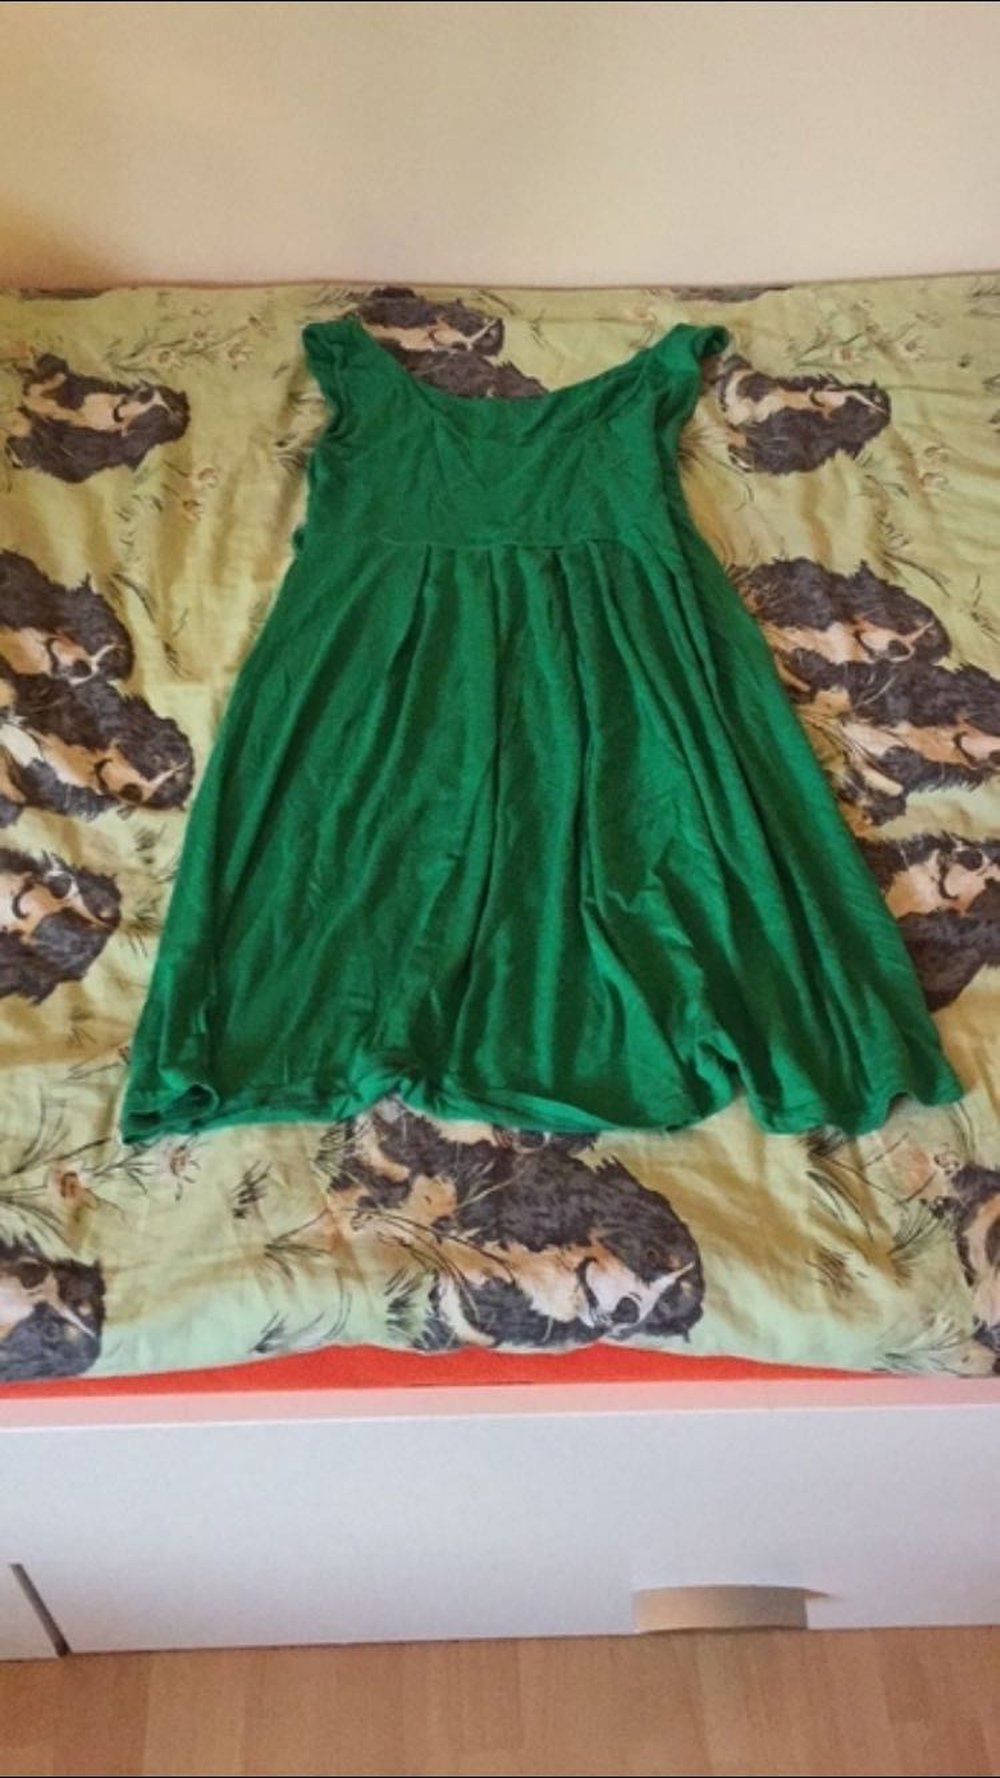 Schönes grünes Kleid.